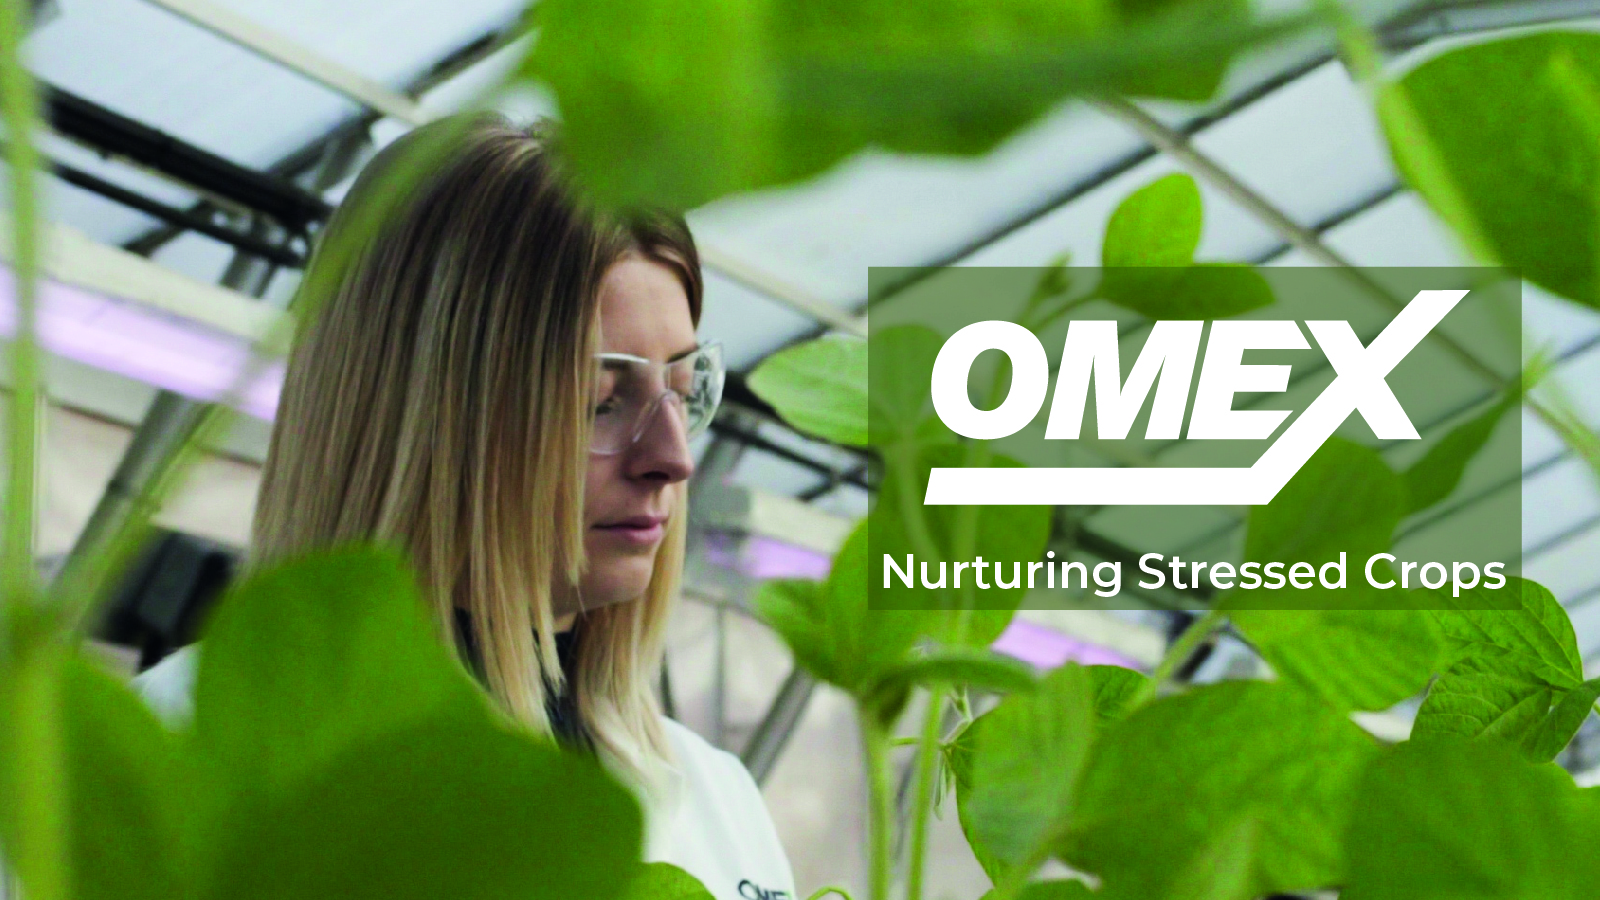 OMEX nurturing stressed crops